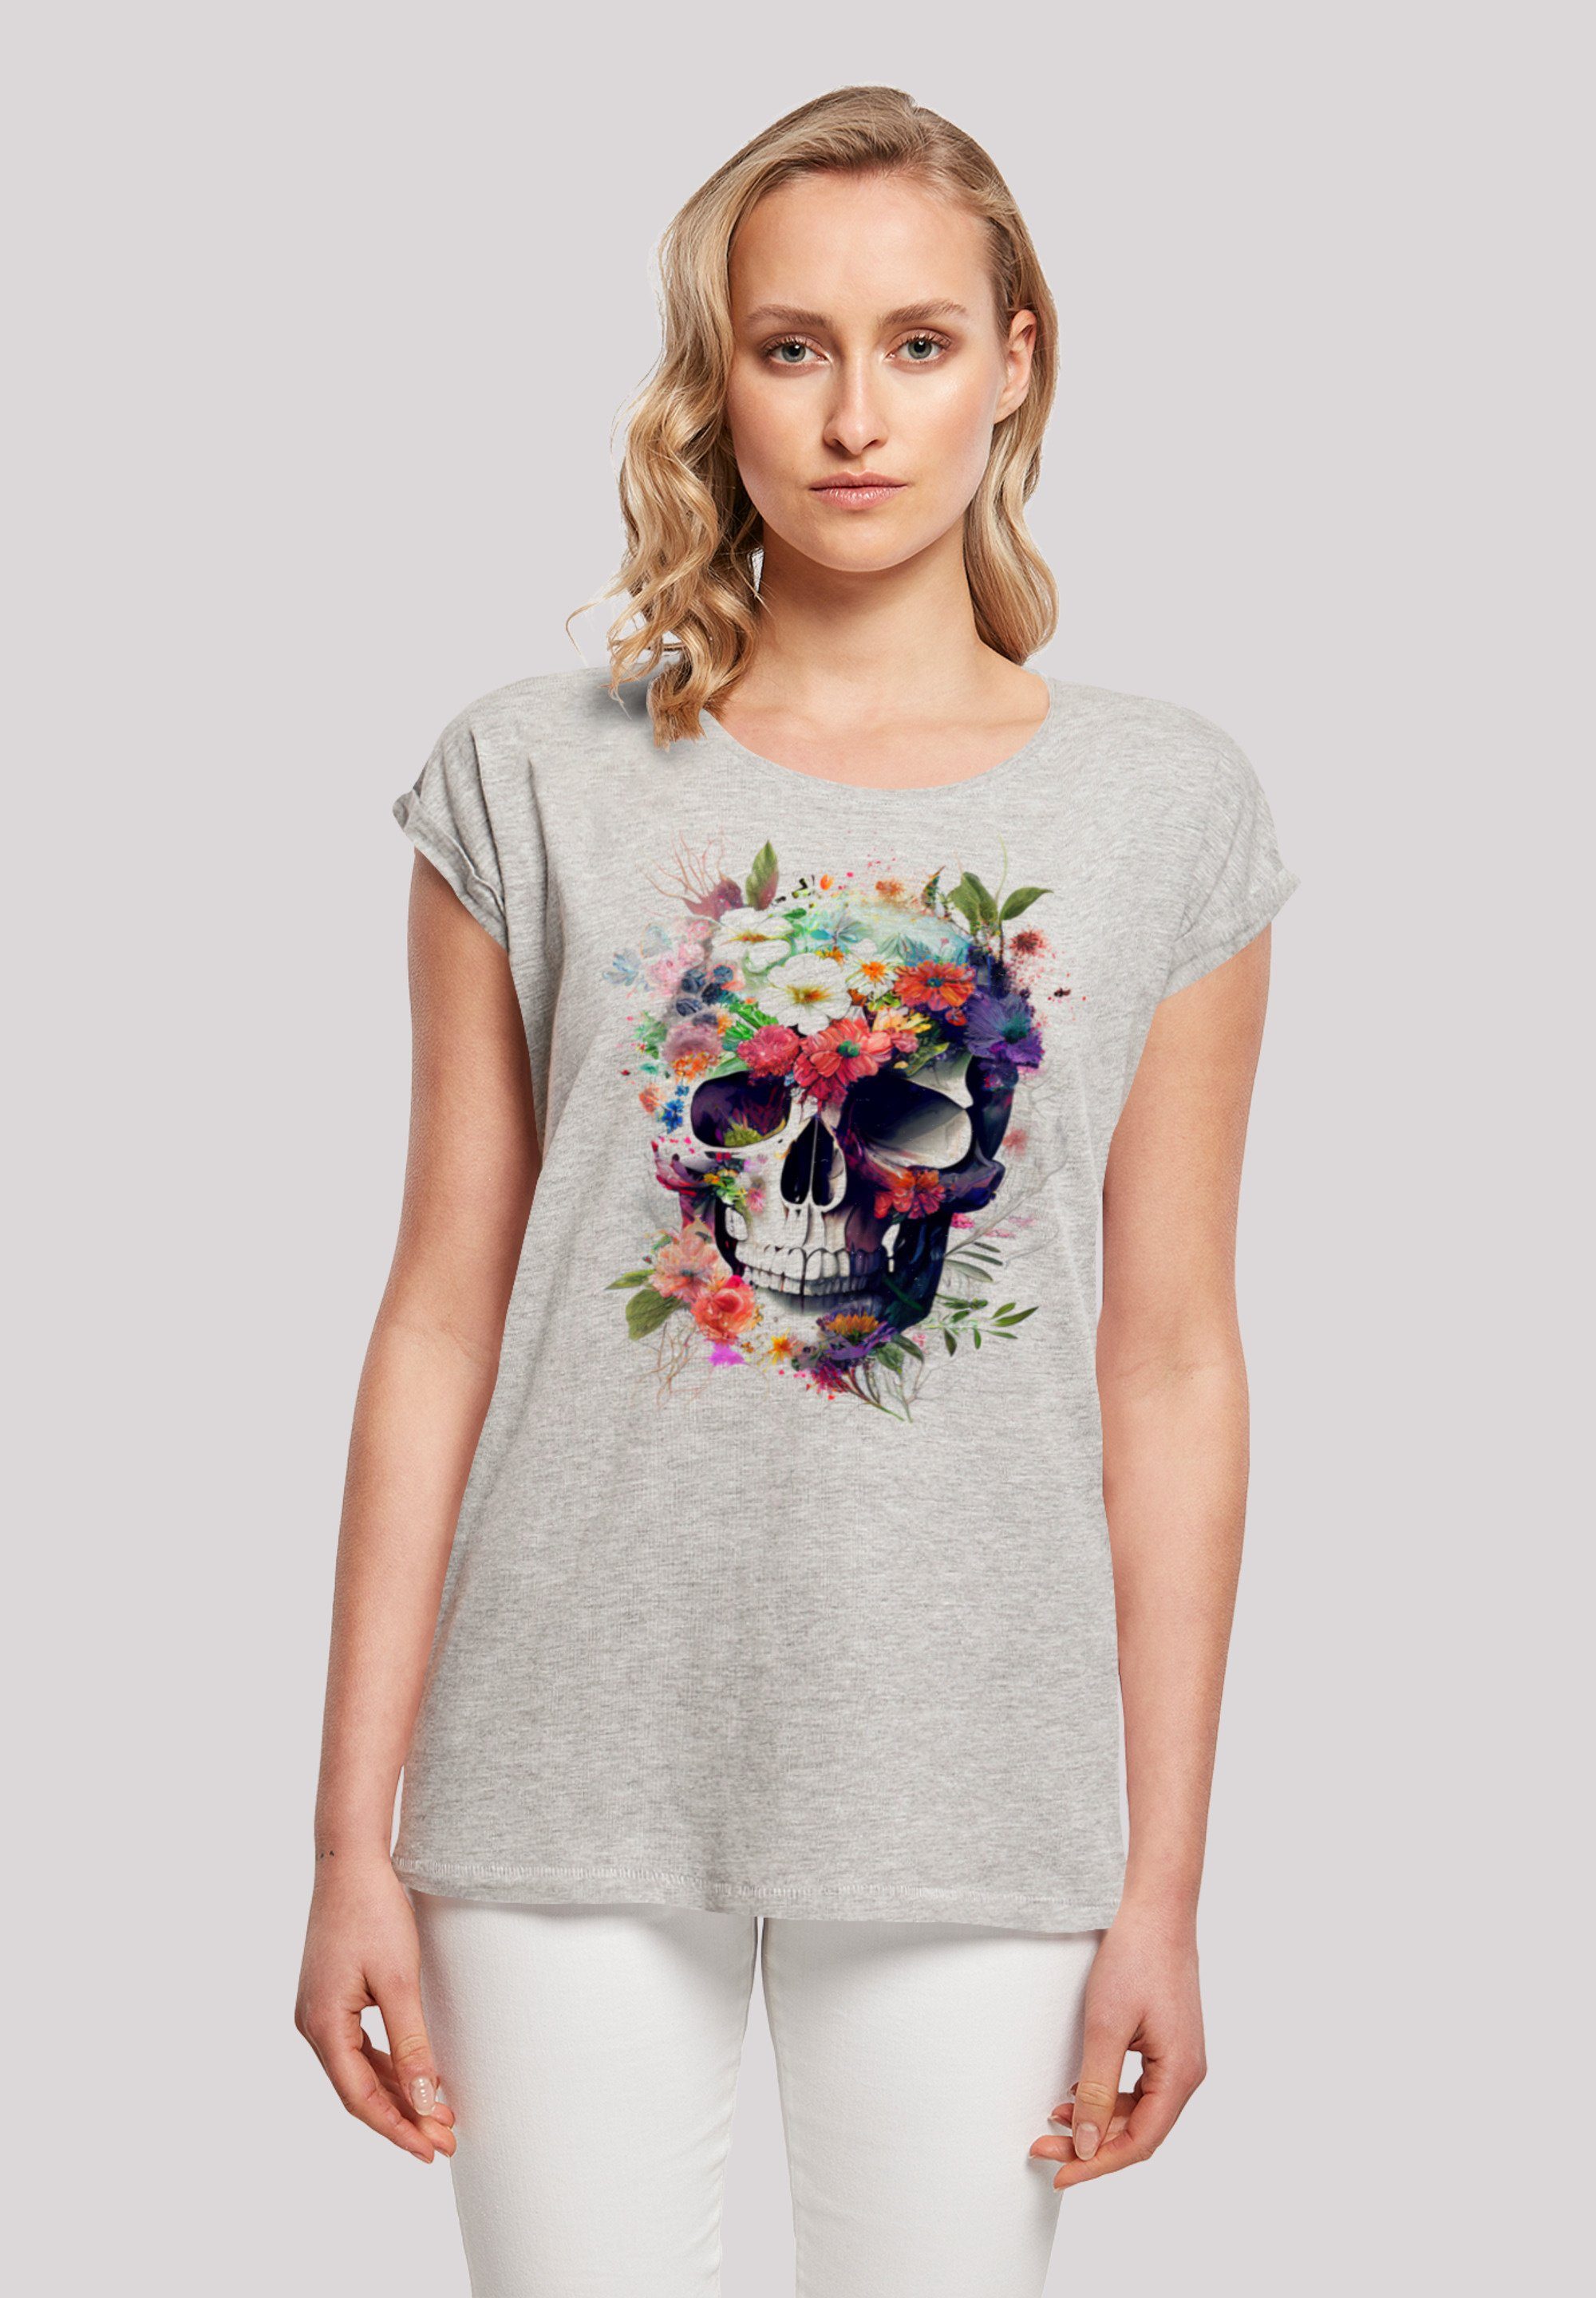 F4NT4STIC T-Shirt trägt Print, Größe groß ist Model cm Das Totenkopf und M 170 Blumen